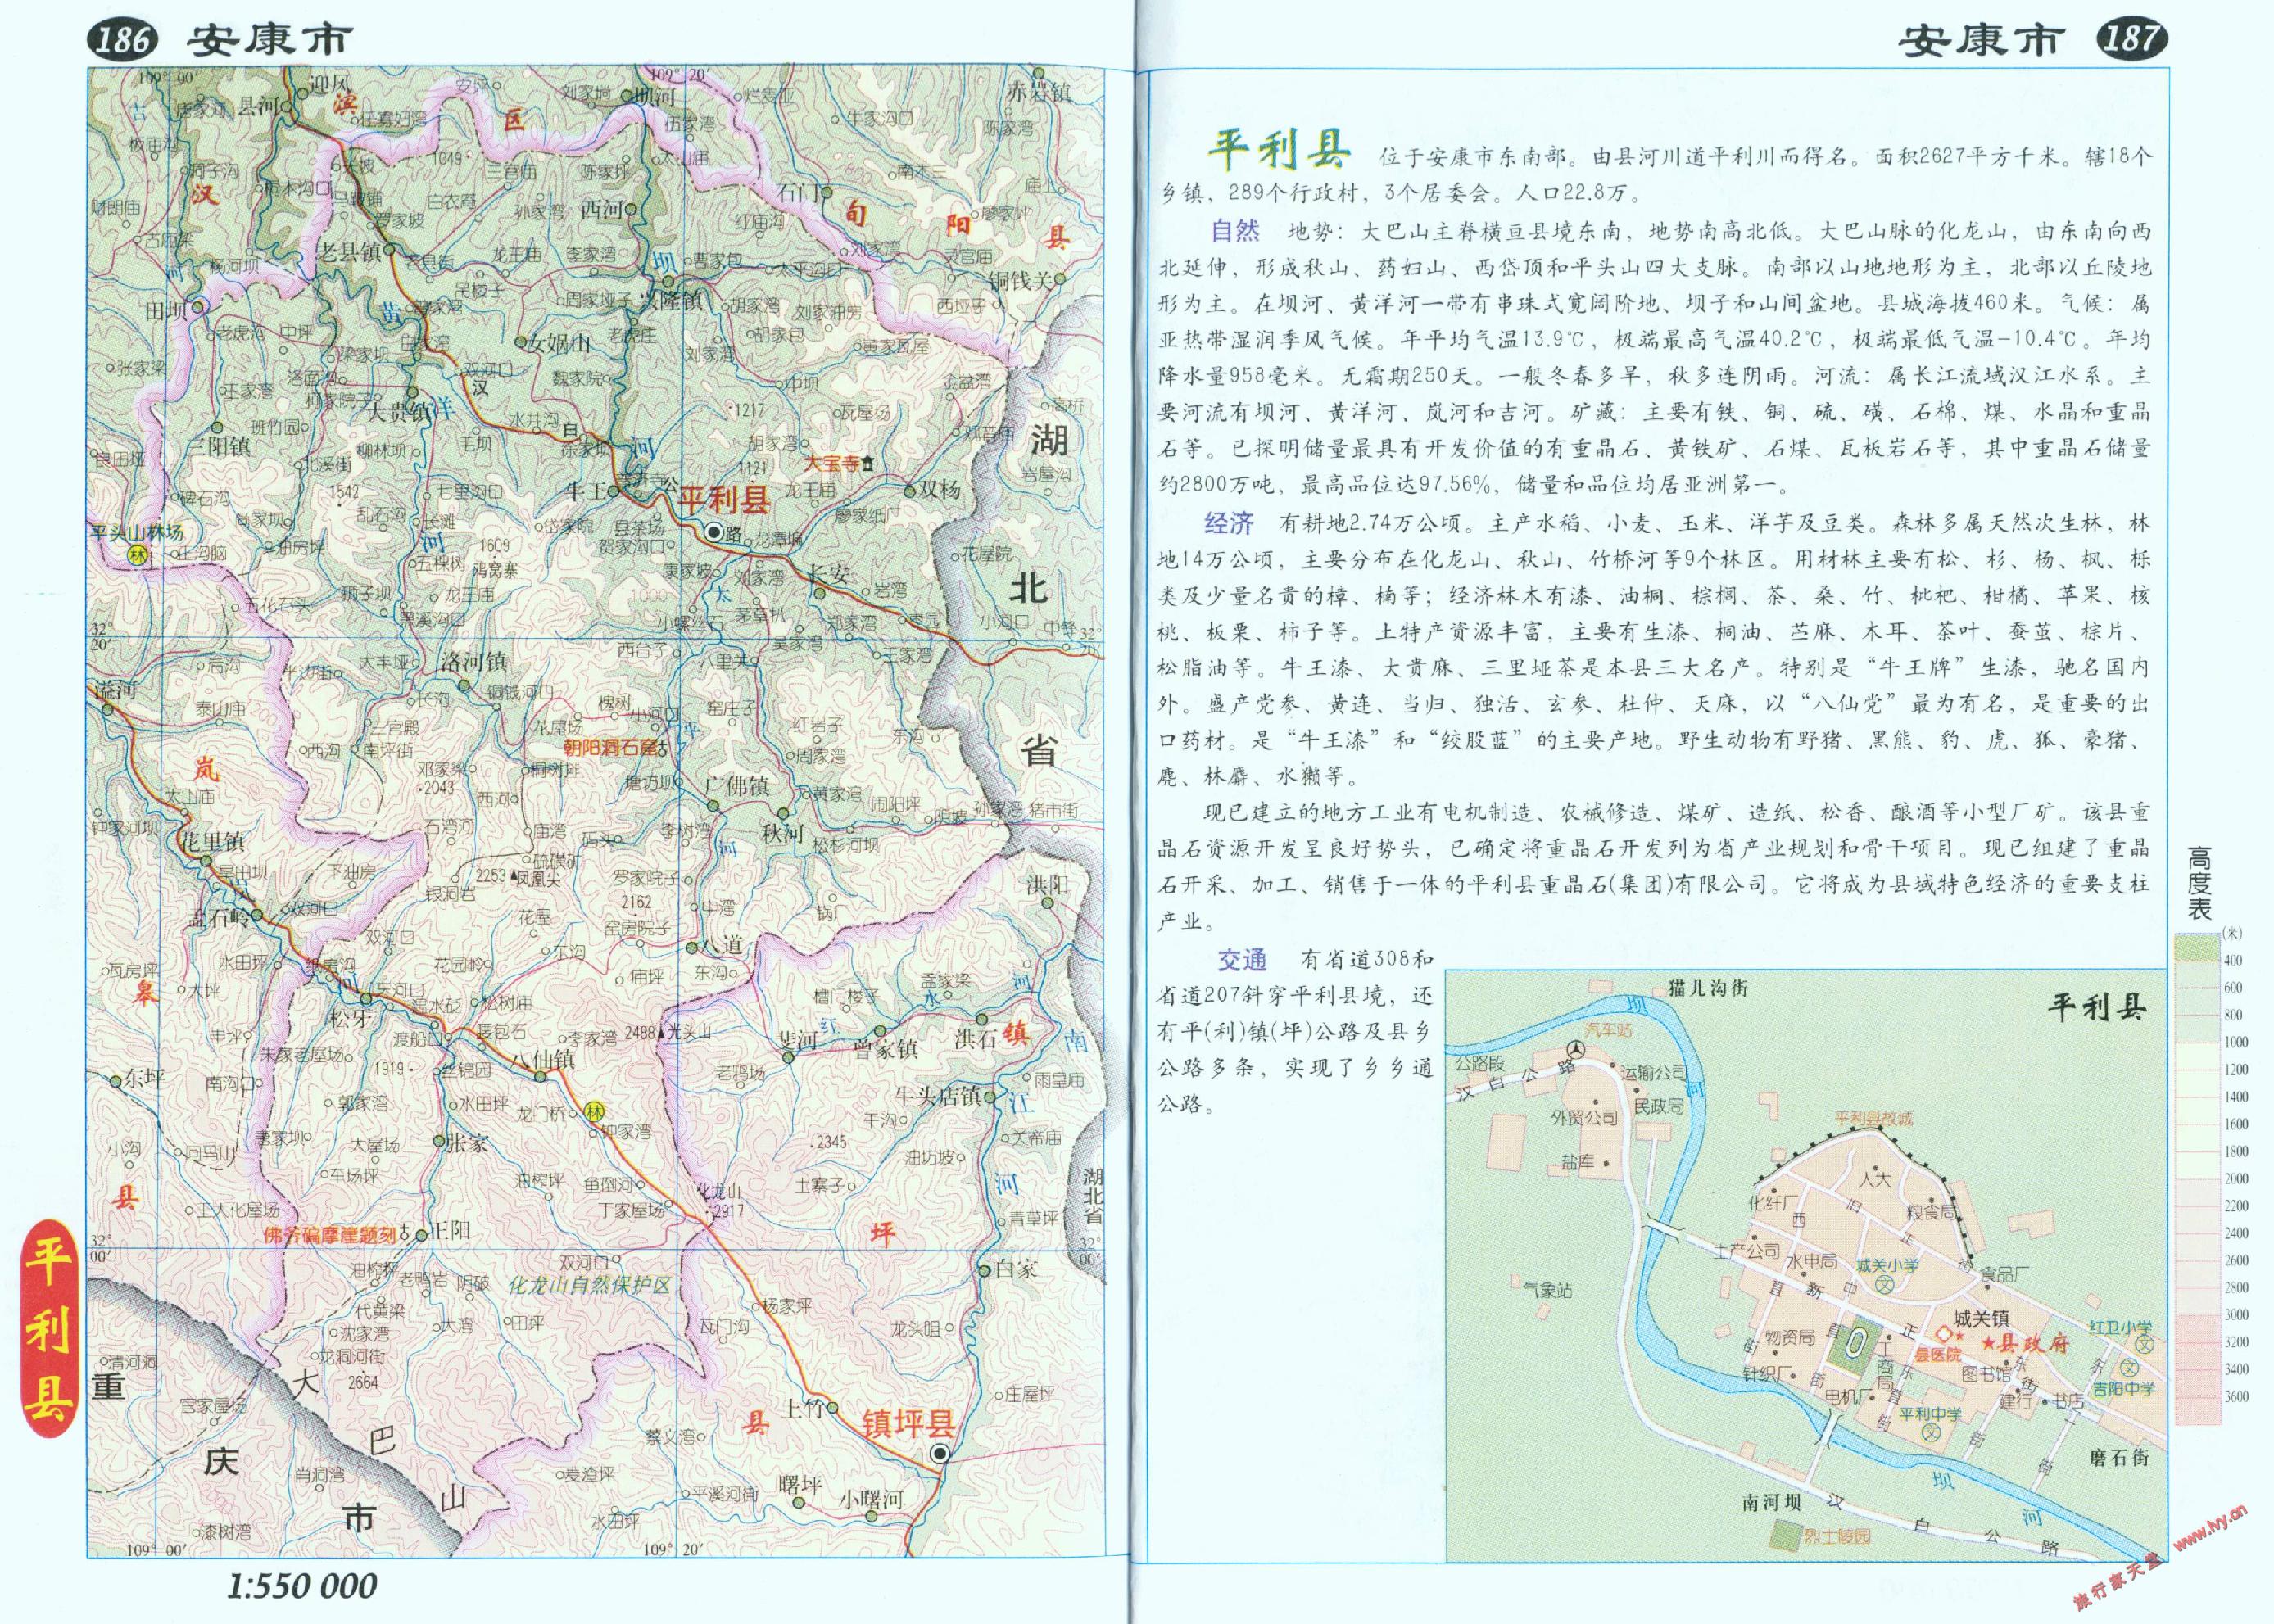 地图窝 地图 陕西 安康  (长按地图可以放大,保存,分享)